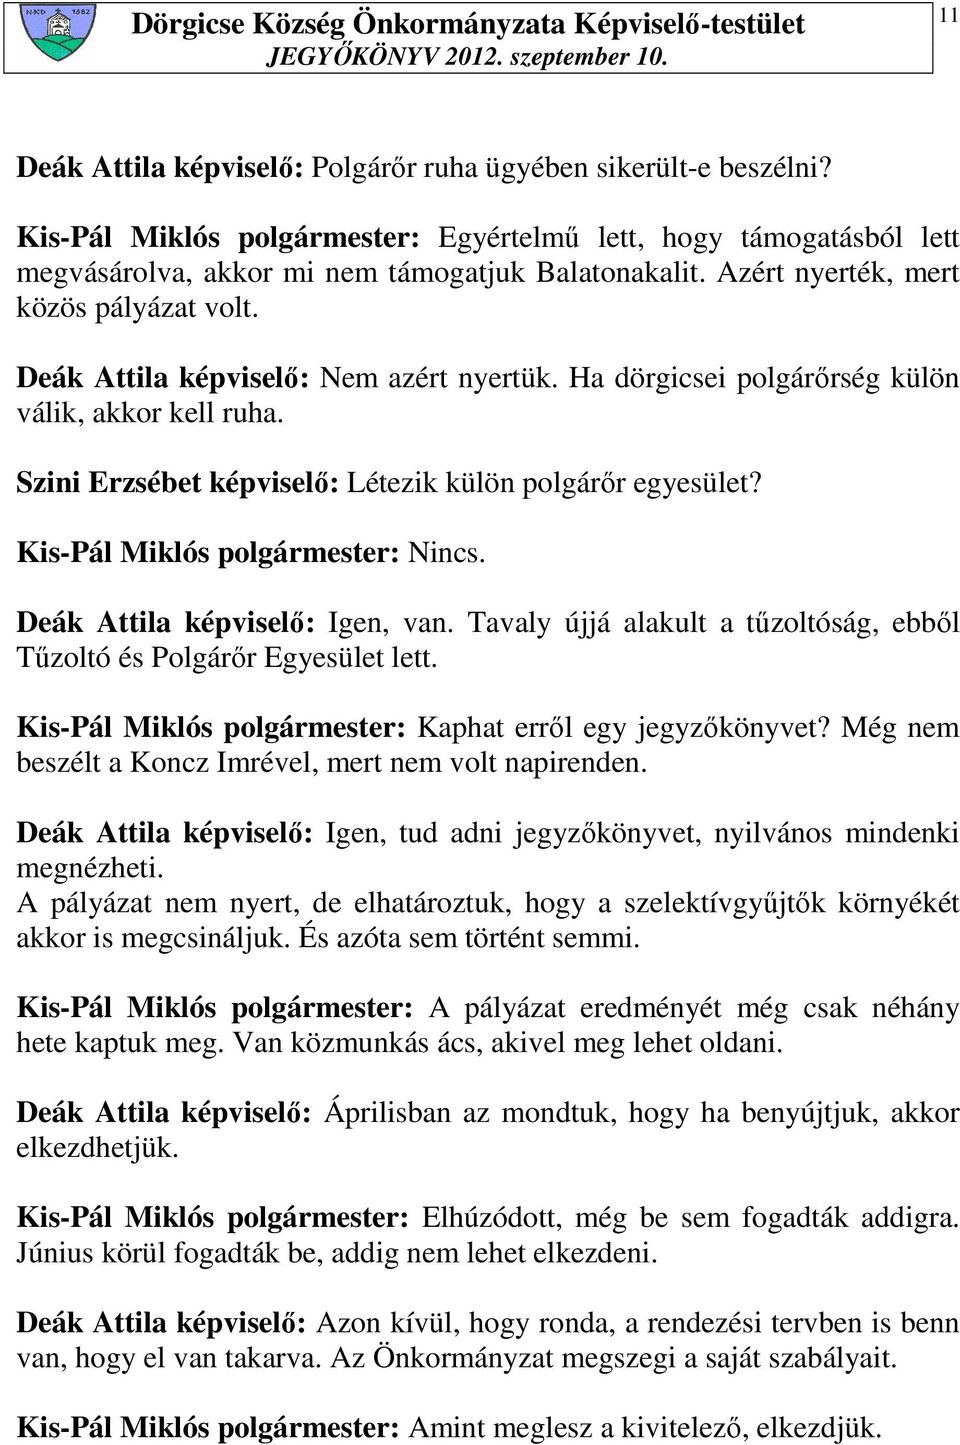 Kis-Pál Miklós polgármester: Nincs. Deák Attila képviselı: Igen, van. Tavaly újjá alakult a tőzoltóság, ebbıl Tőzoltó és Polgárır Egyesület lett.